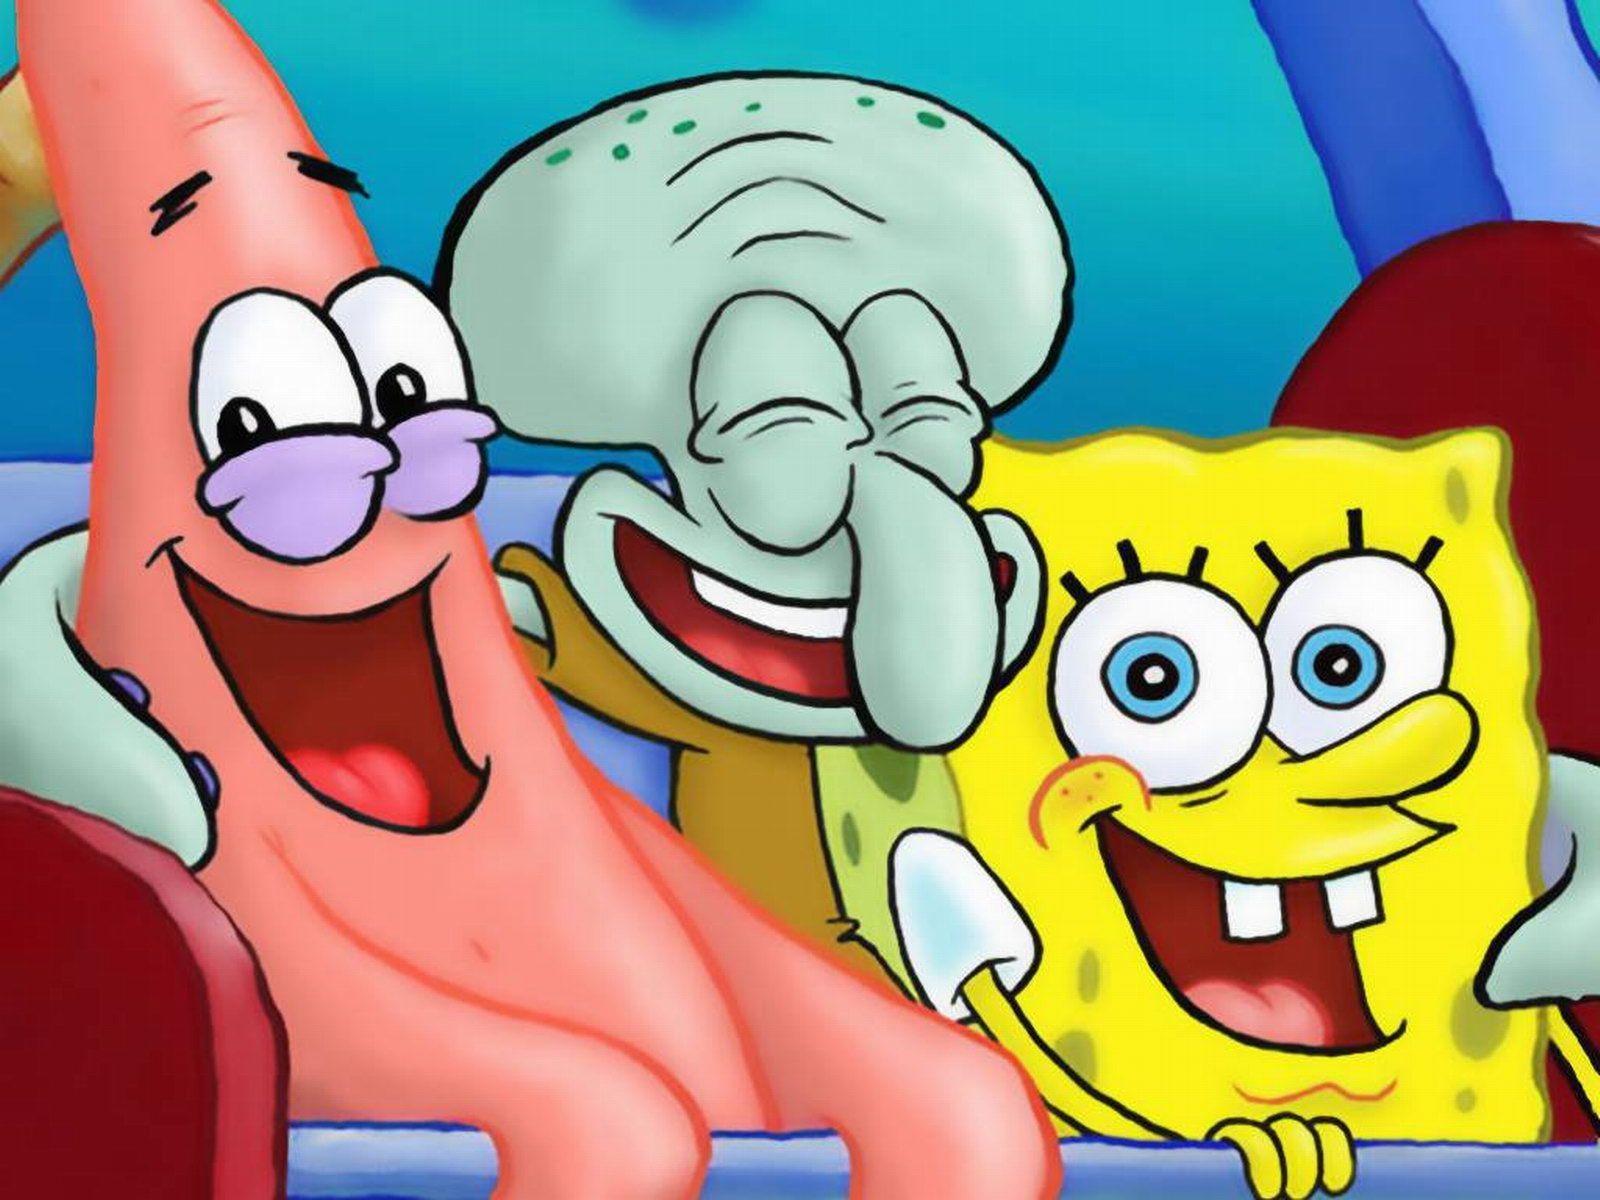 Spongebob Squarepants, Patrick Star, and Squidward Tentacles. My